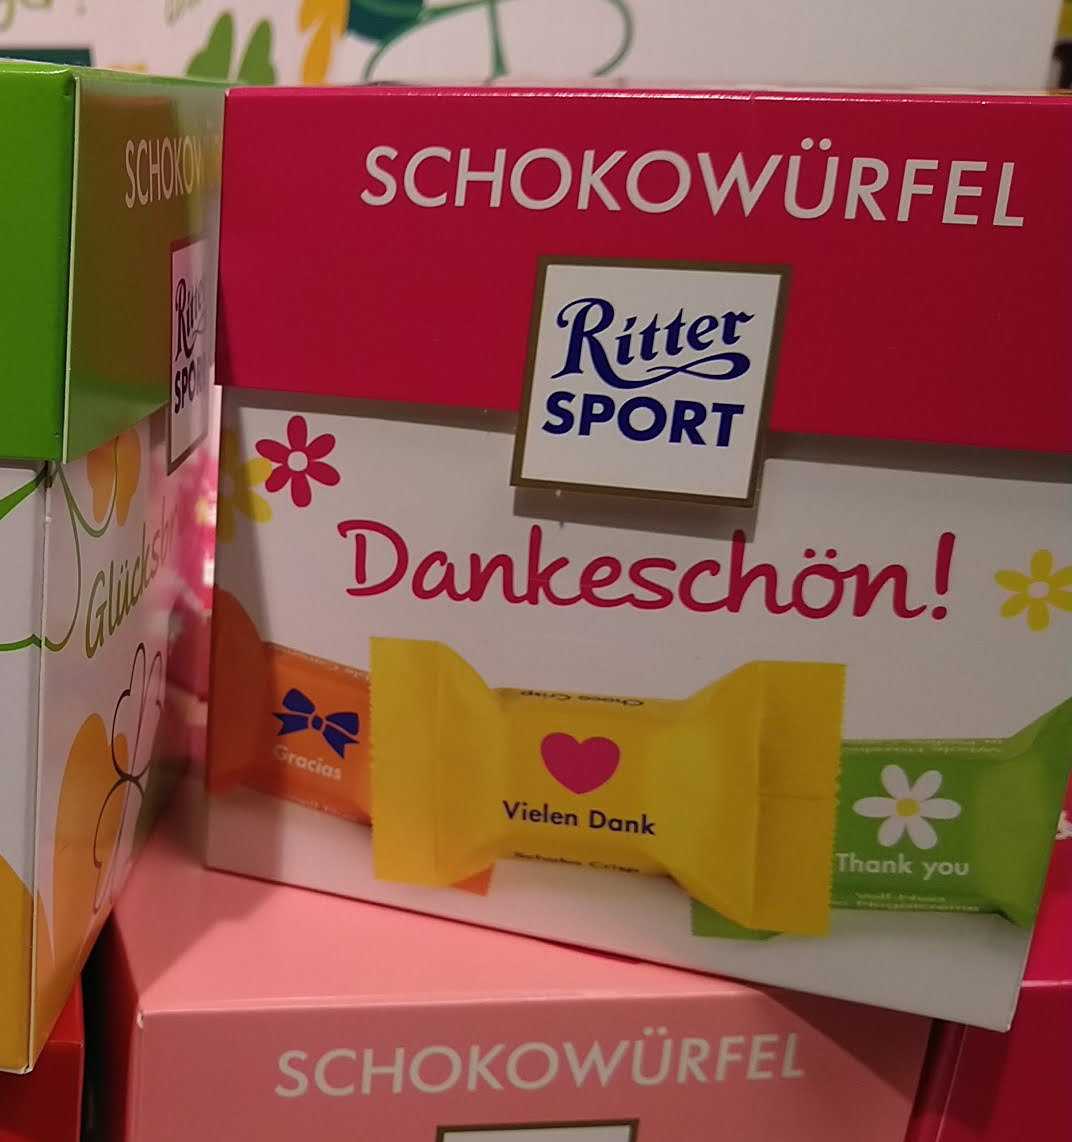 Ritter Sport Schokowürfel: Kassenbon hochladen, gewinnen